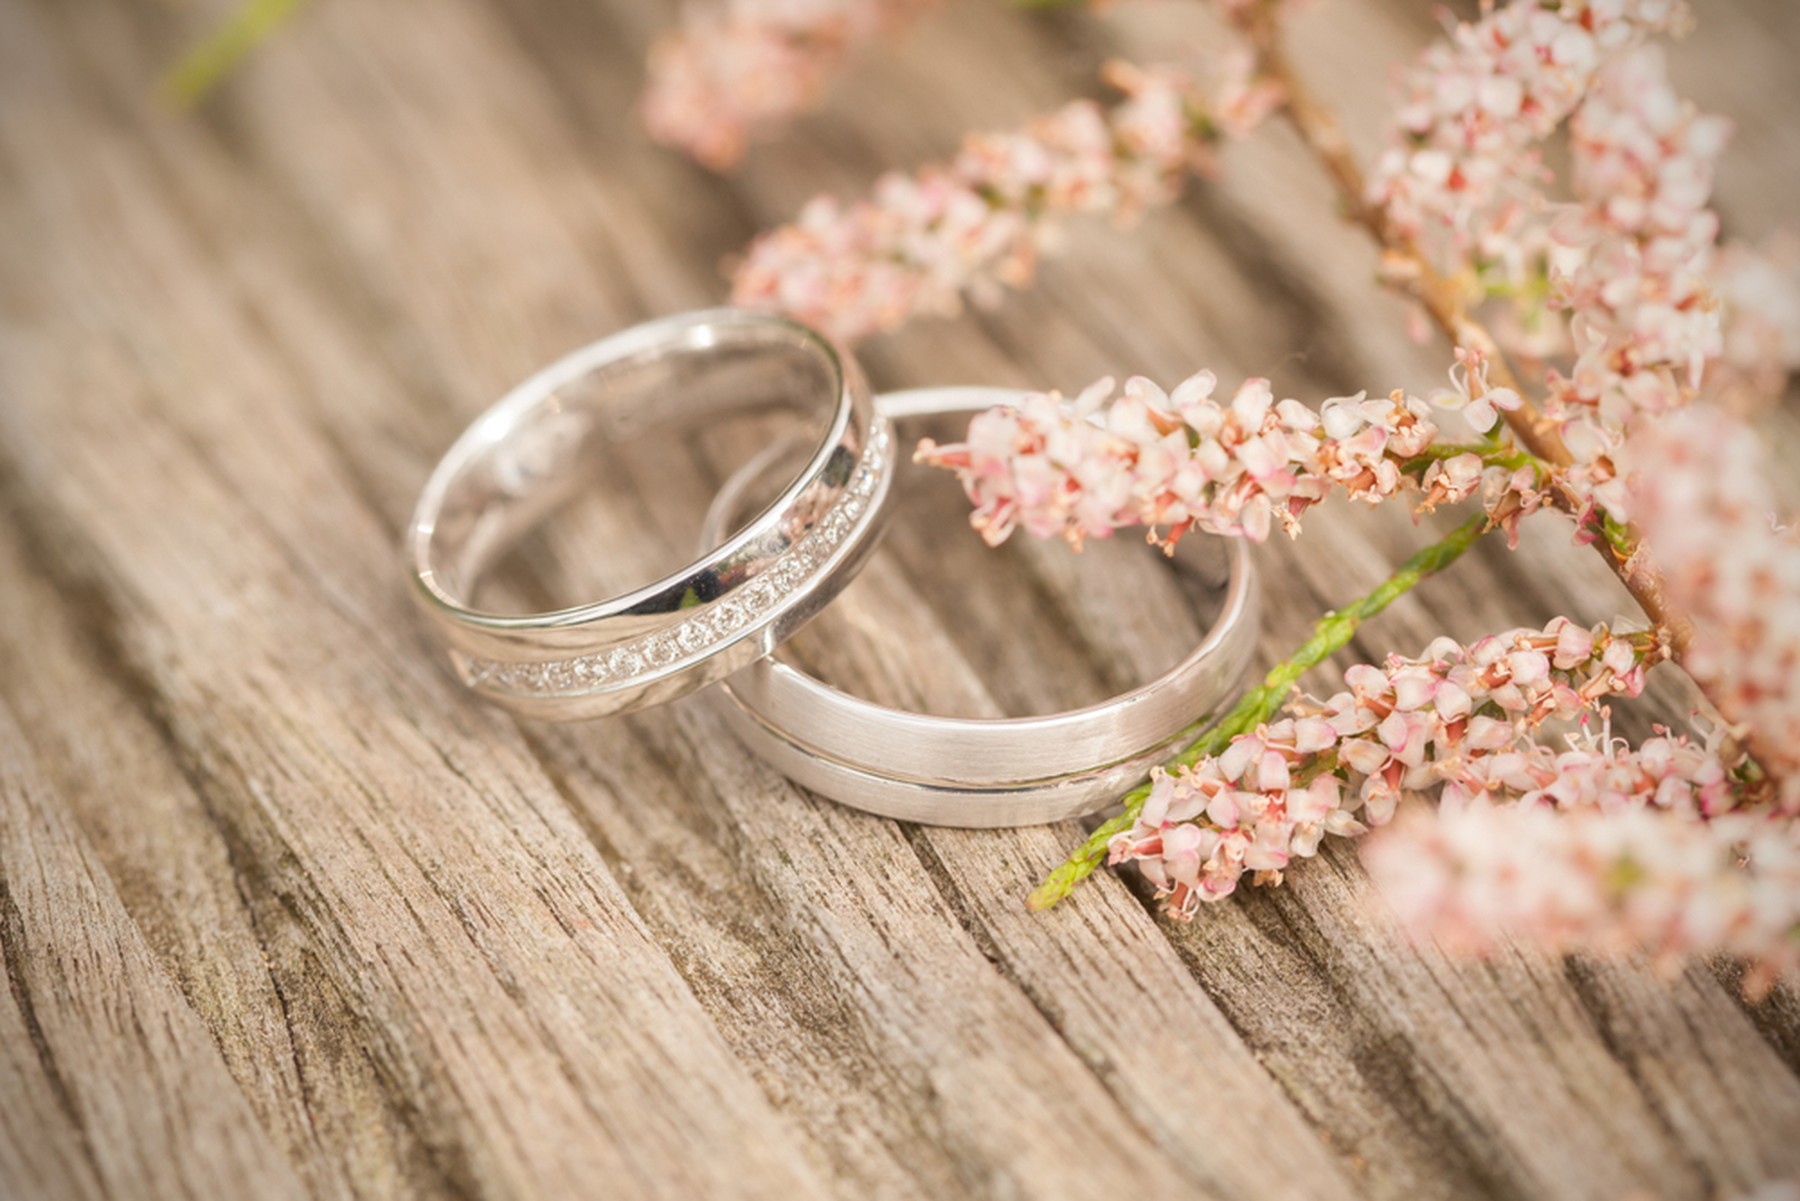 Dos alianzas de plata u oro blanco con un ramito de flores rosas al lado. Todo está sobre una mesa de madera.